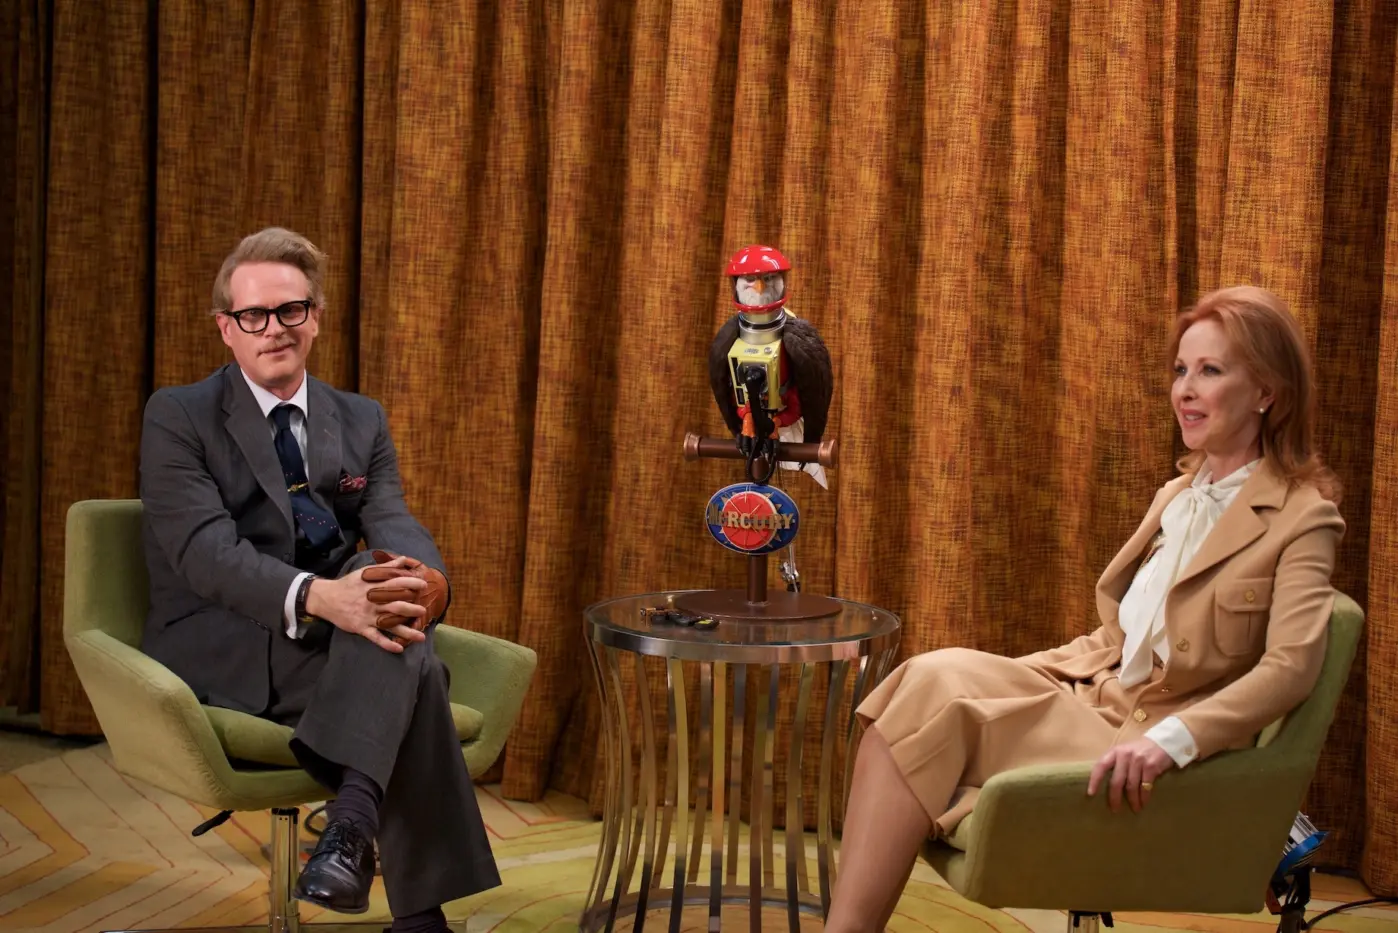 ein Fernsehinterview, vor einem braunen, altmodischen Vorhang sitzen ein Mann im grauen Anzug und eine Moderatorin, zwischen ihnen steht ein metallener Tisch auf dem ein Vogel mit einem roten Helm sitzt